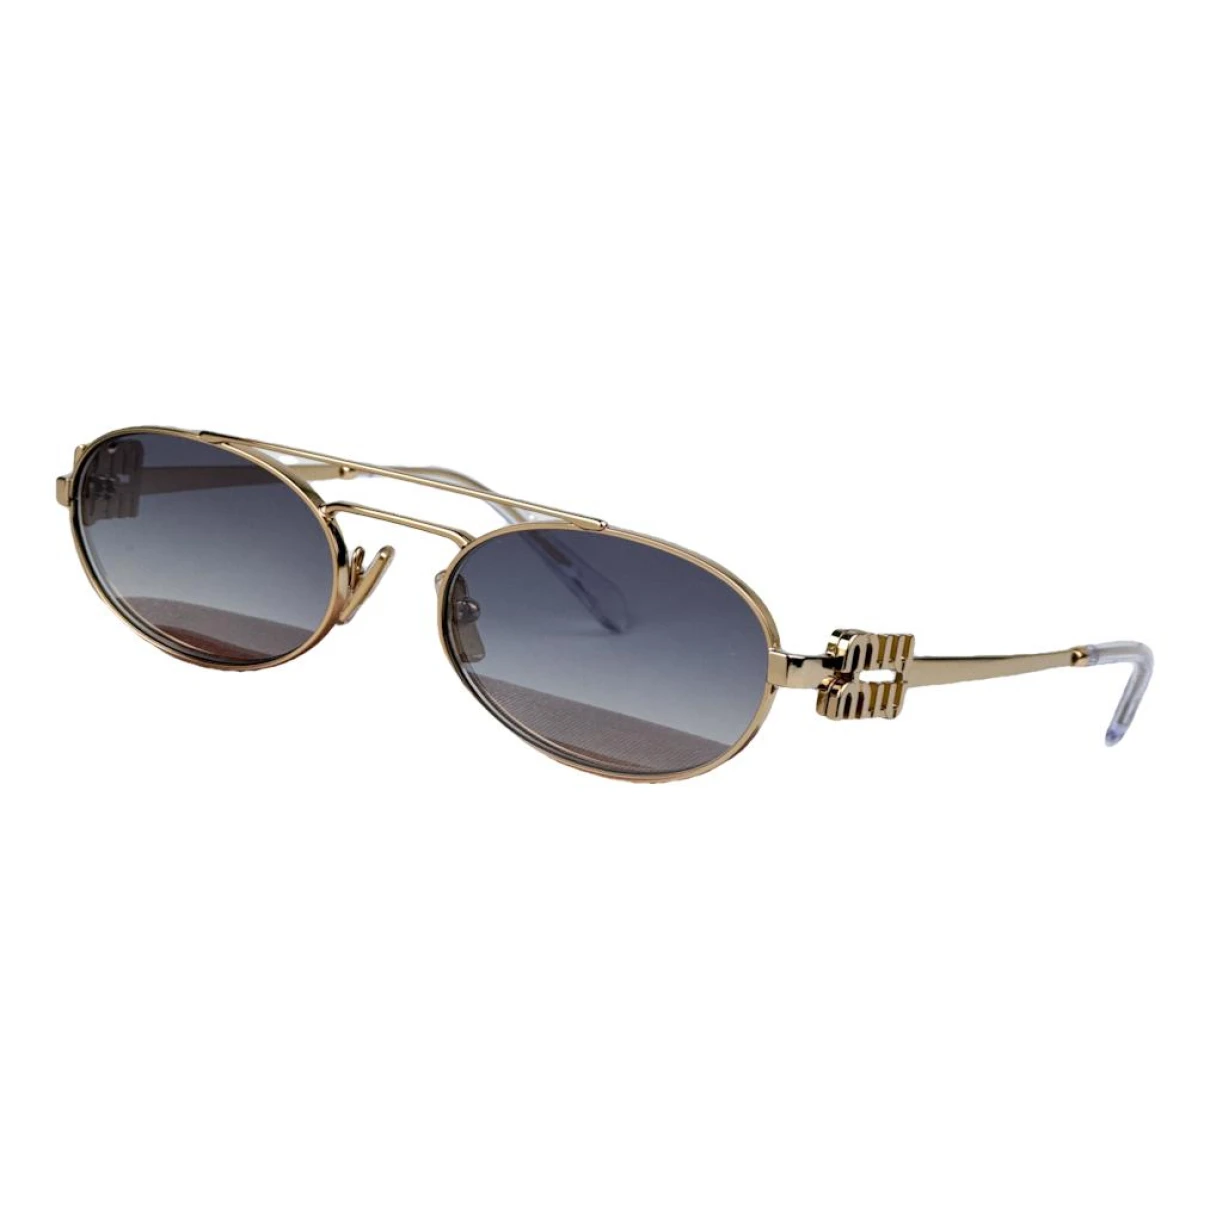 Pre-owned Miu Miu Sunglasses In Gold